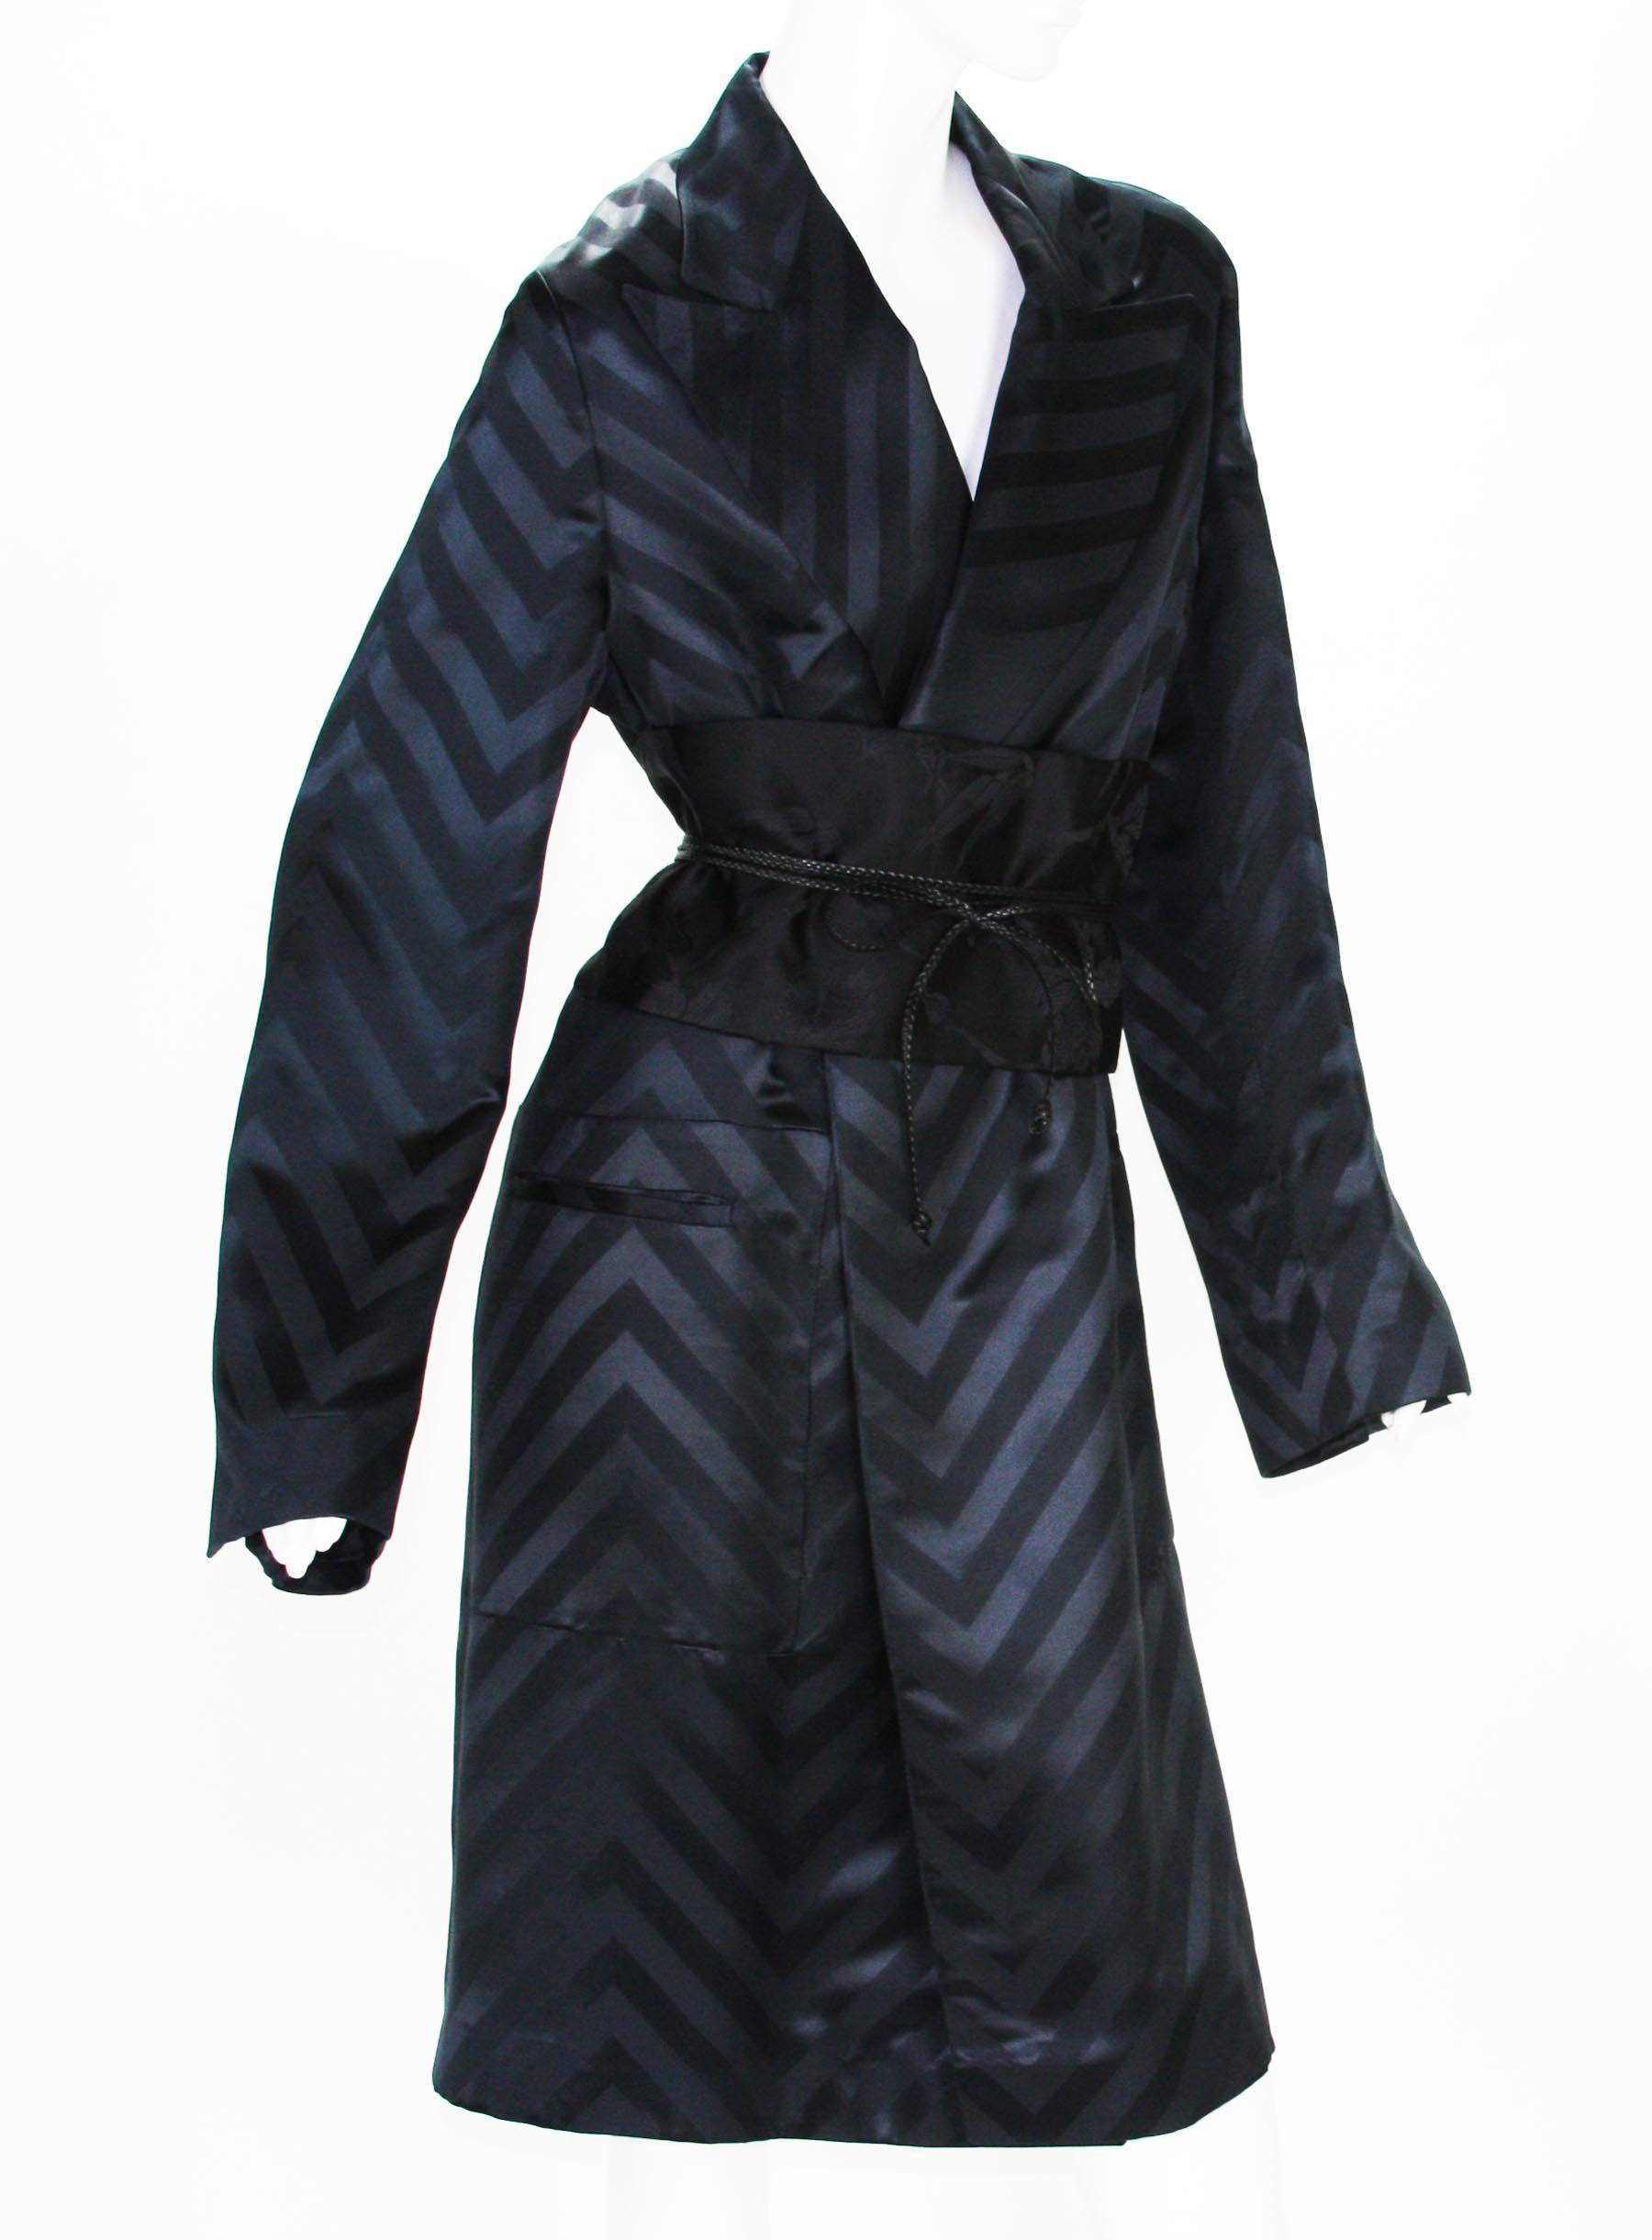 Noir Tom Ford pour Gucci - Manteau kimono à chevrons en soie noire avec ceinture Obi, taille IT 40, automne-hiver 2002 en vente